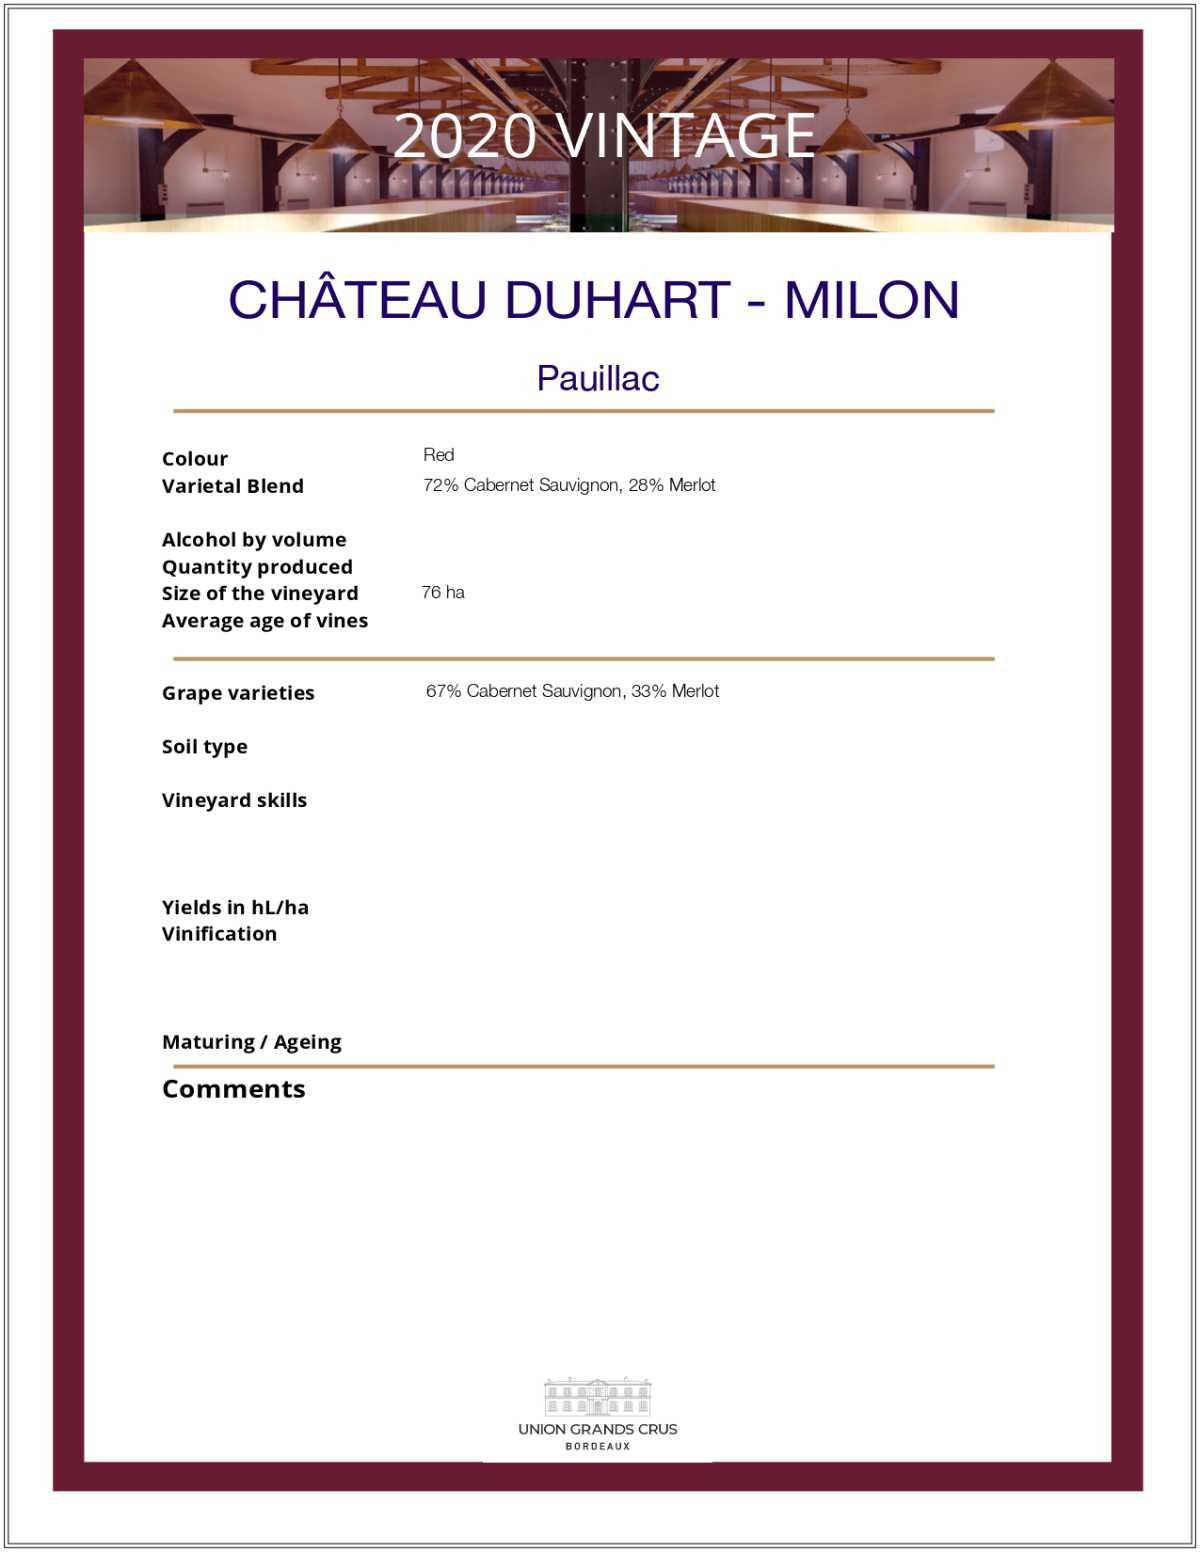 Château Duhart - Milon